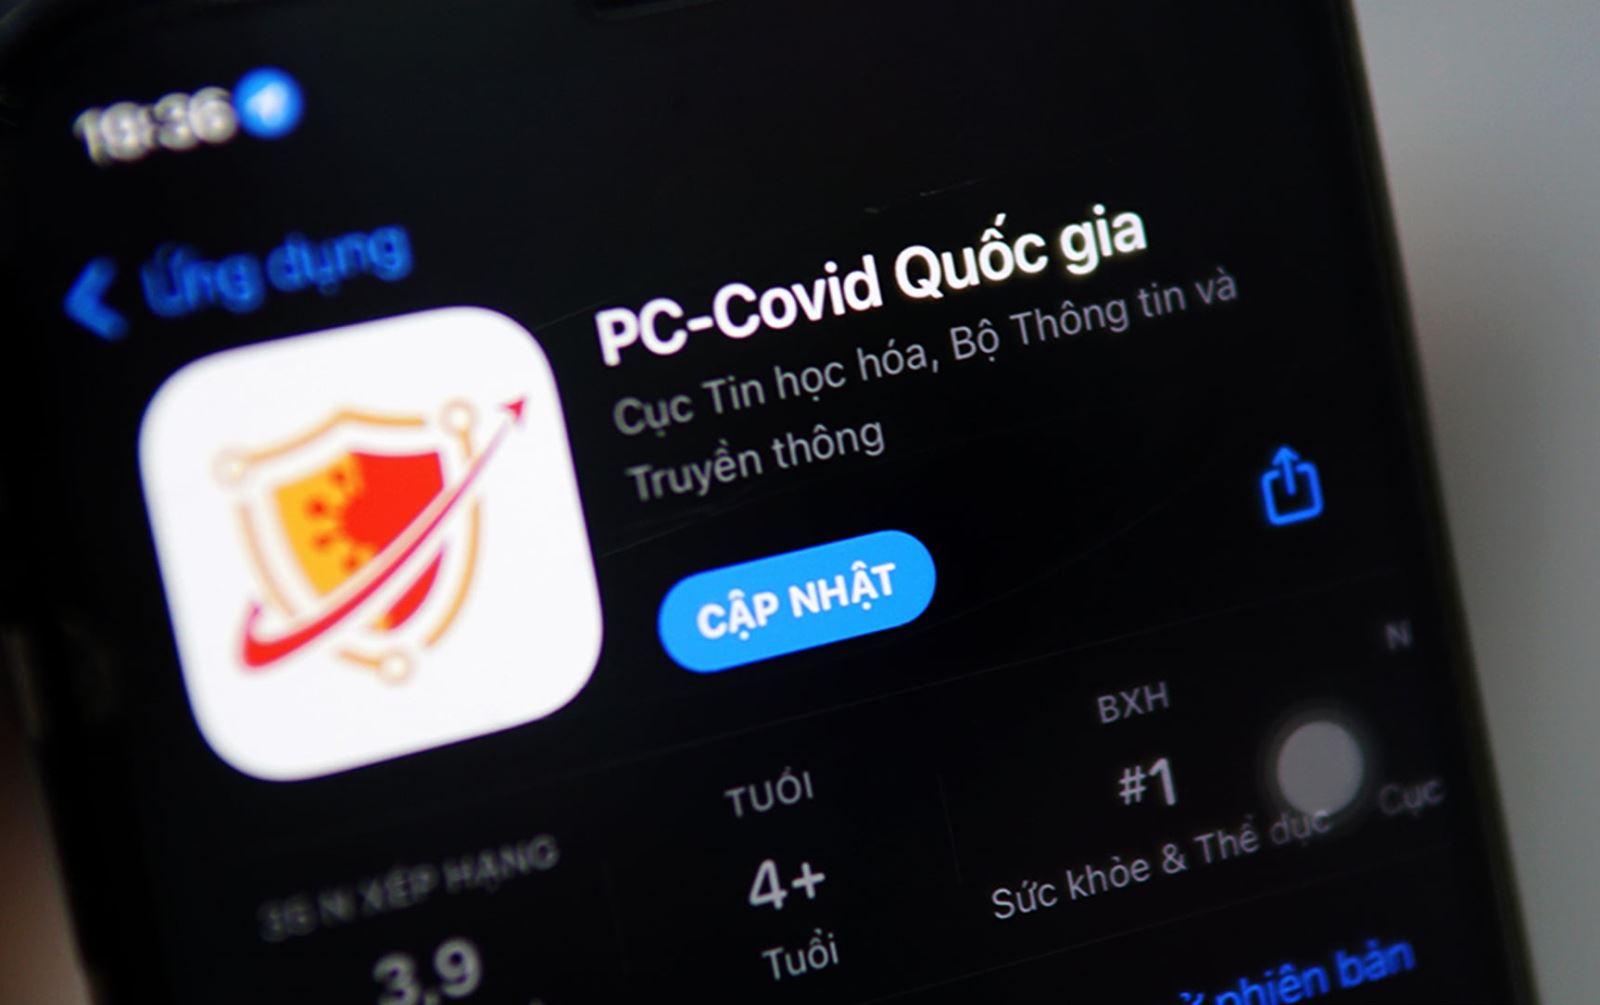 App PC-COVID có bản cập nhật đầu tiên | baotintuc.vn